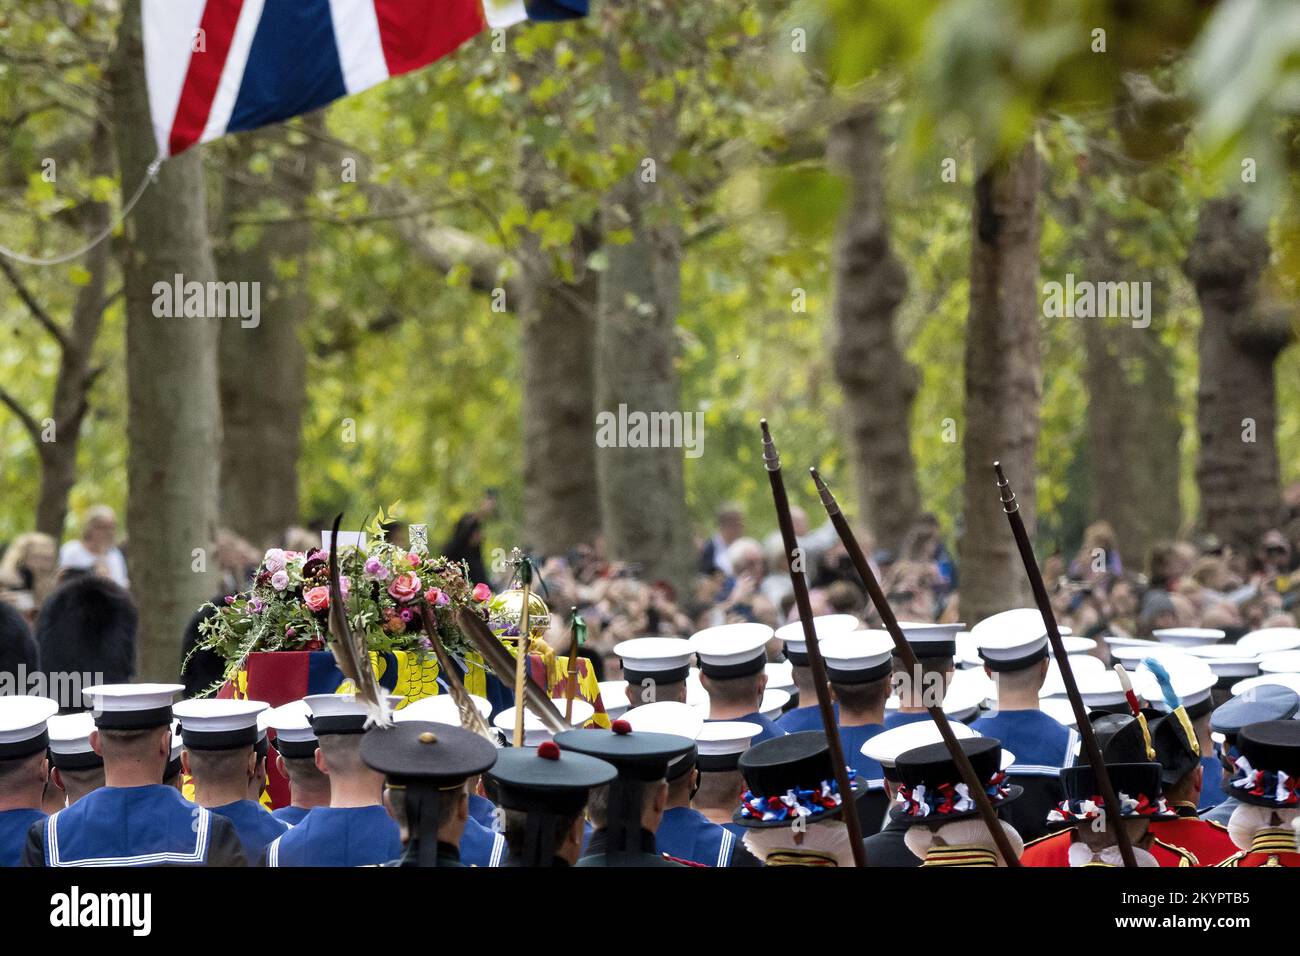 LONDRES, ANGLETERRE: La procession funéraire de l'État pour la Reine Elizabeth II comme vu du Mall après le service à l'abbaye de Westminster. Avec: Queen Elizabeth II où: Londres, Royaume-Uni quand: 19 sept 2022 crédit: Neil Lupin/WENN Banque D'Images